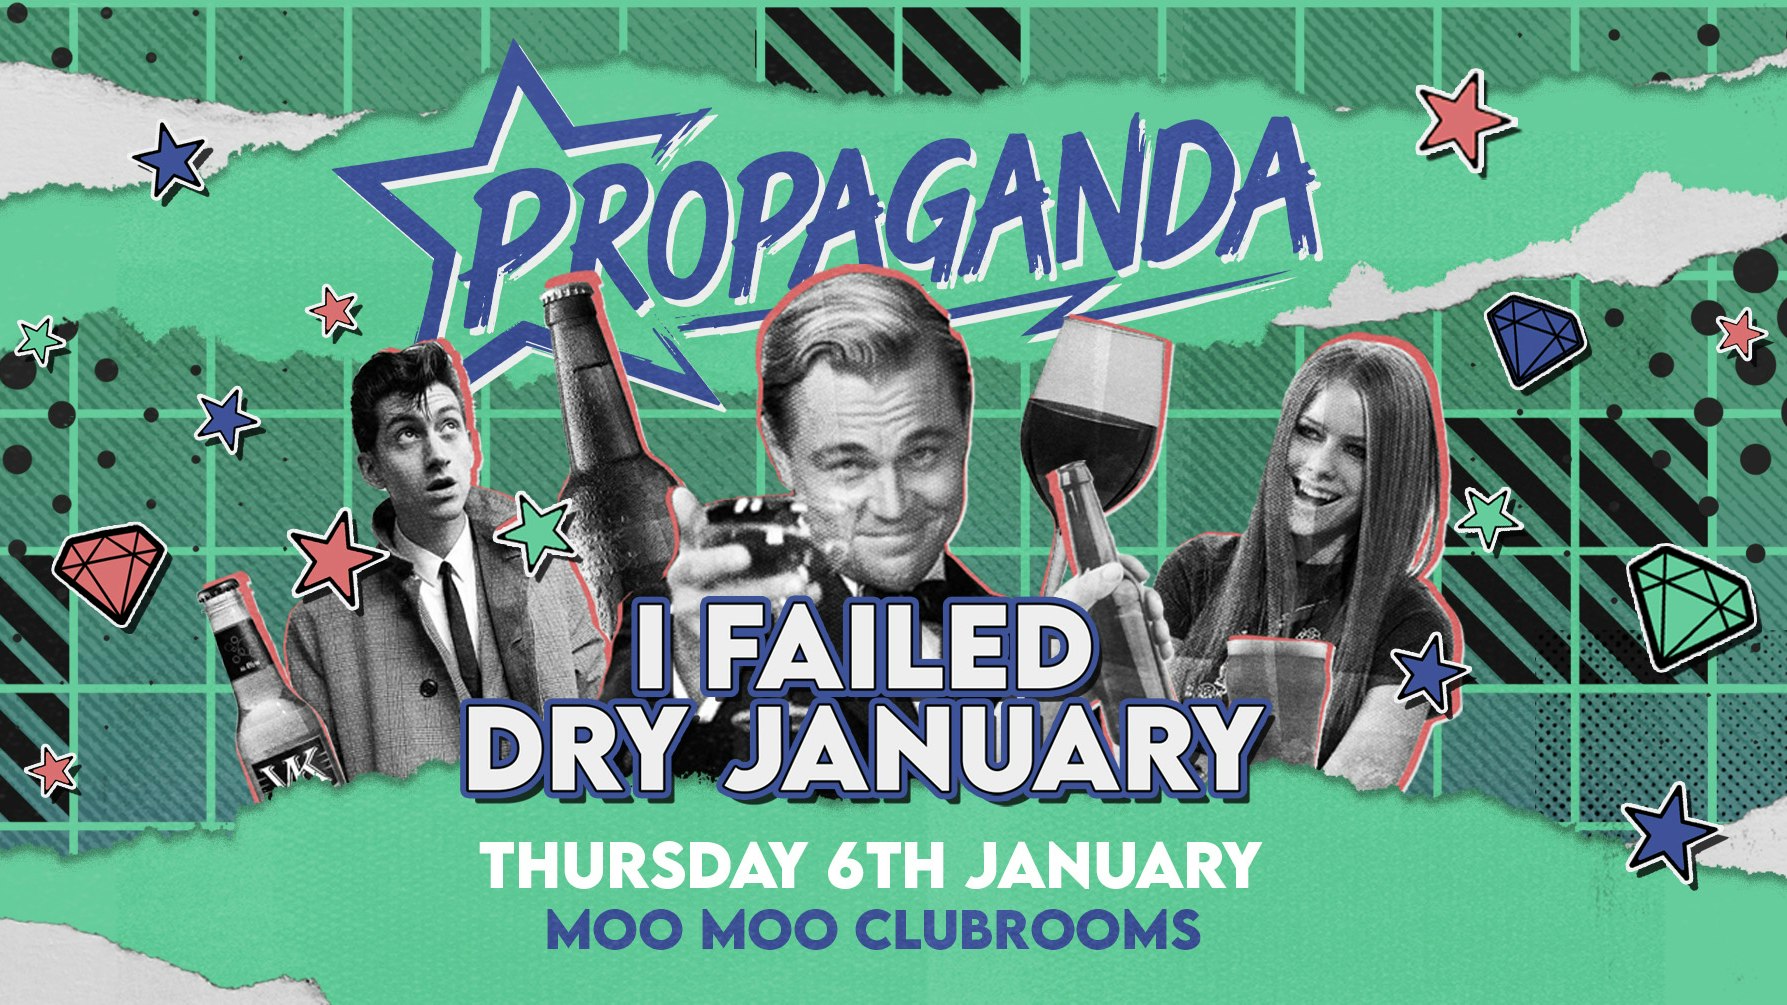 Propaganda Cheltenham – I Failed Dry January!